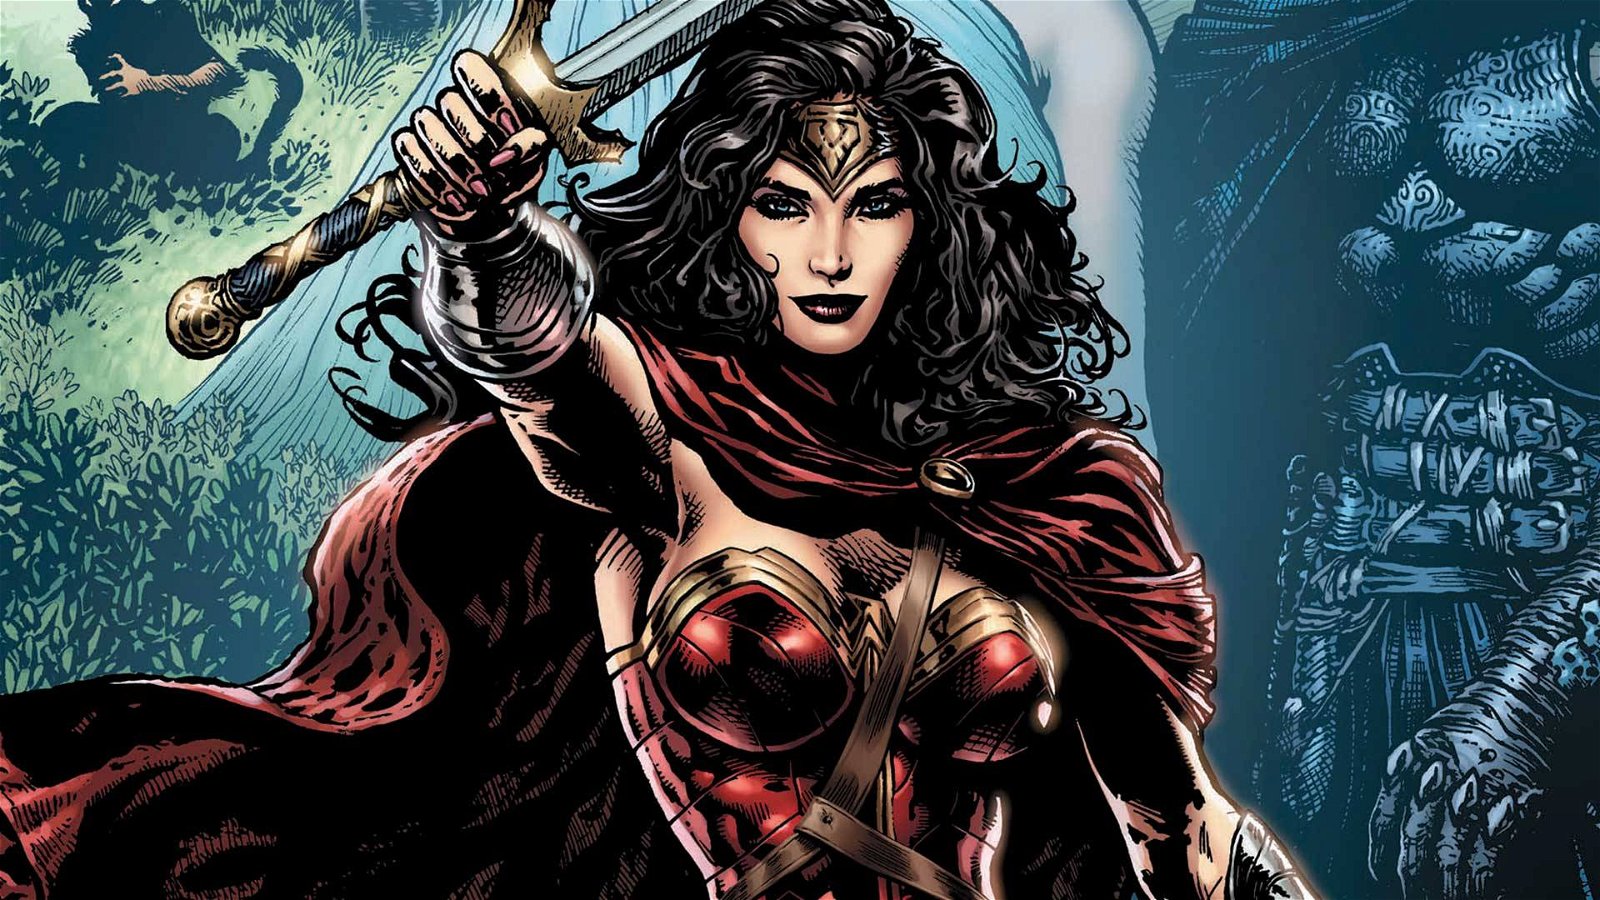 Immagine di Wonder Woman | I migliori fumetti da regalare a Natale